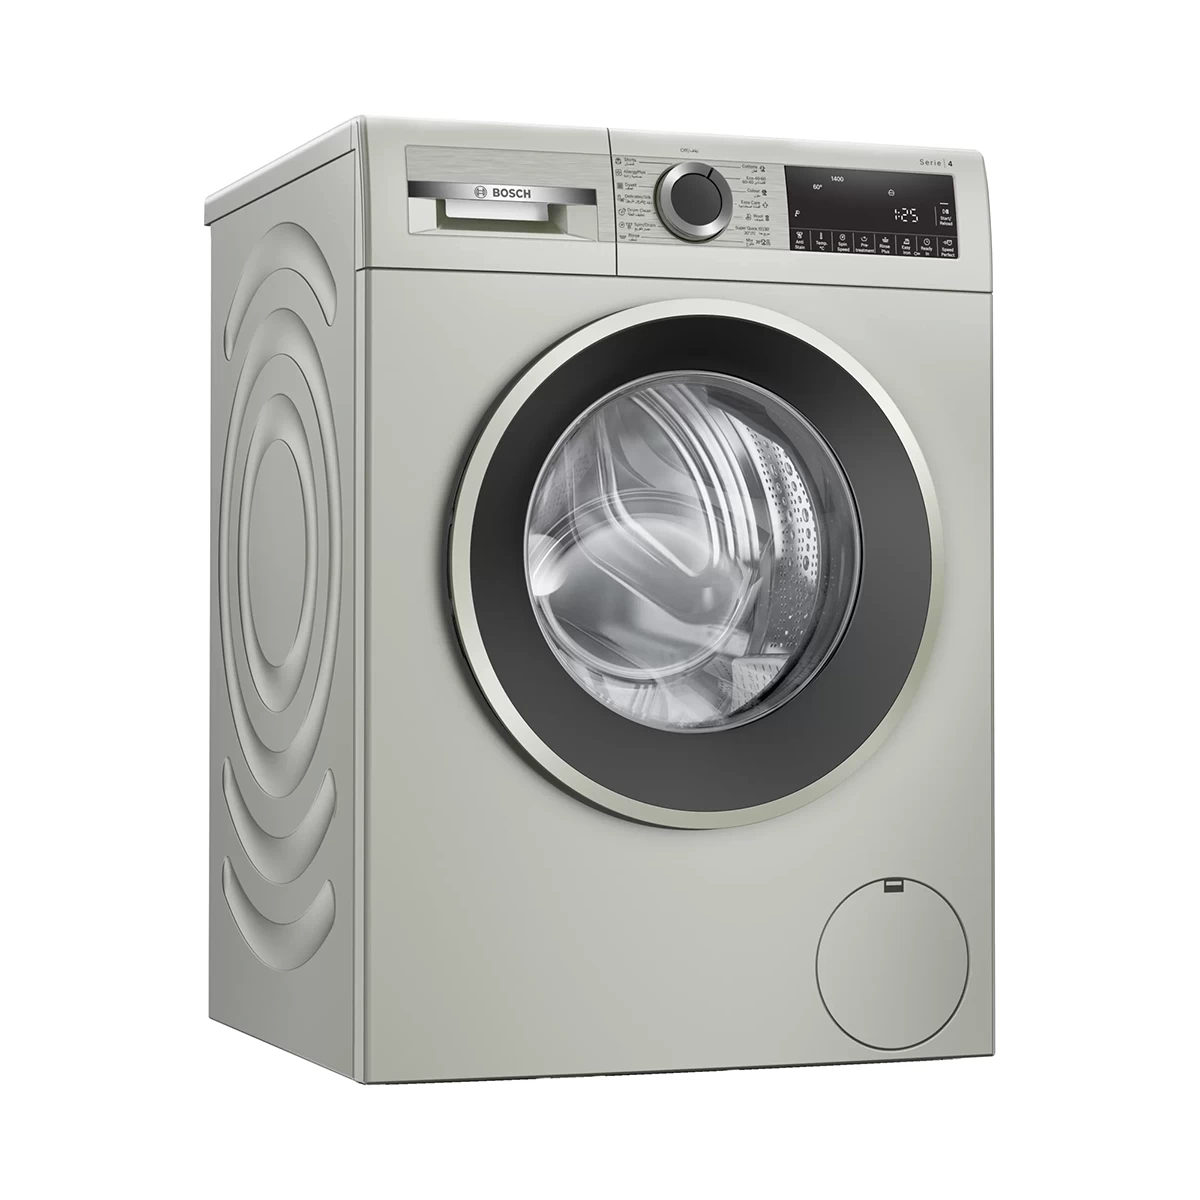 BOSCH washing machine Series 4 , frontloader fullsize 10 kg